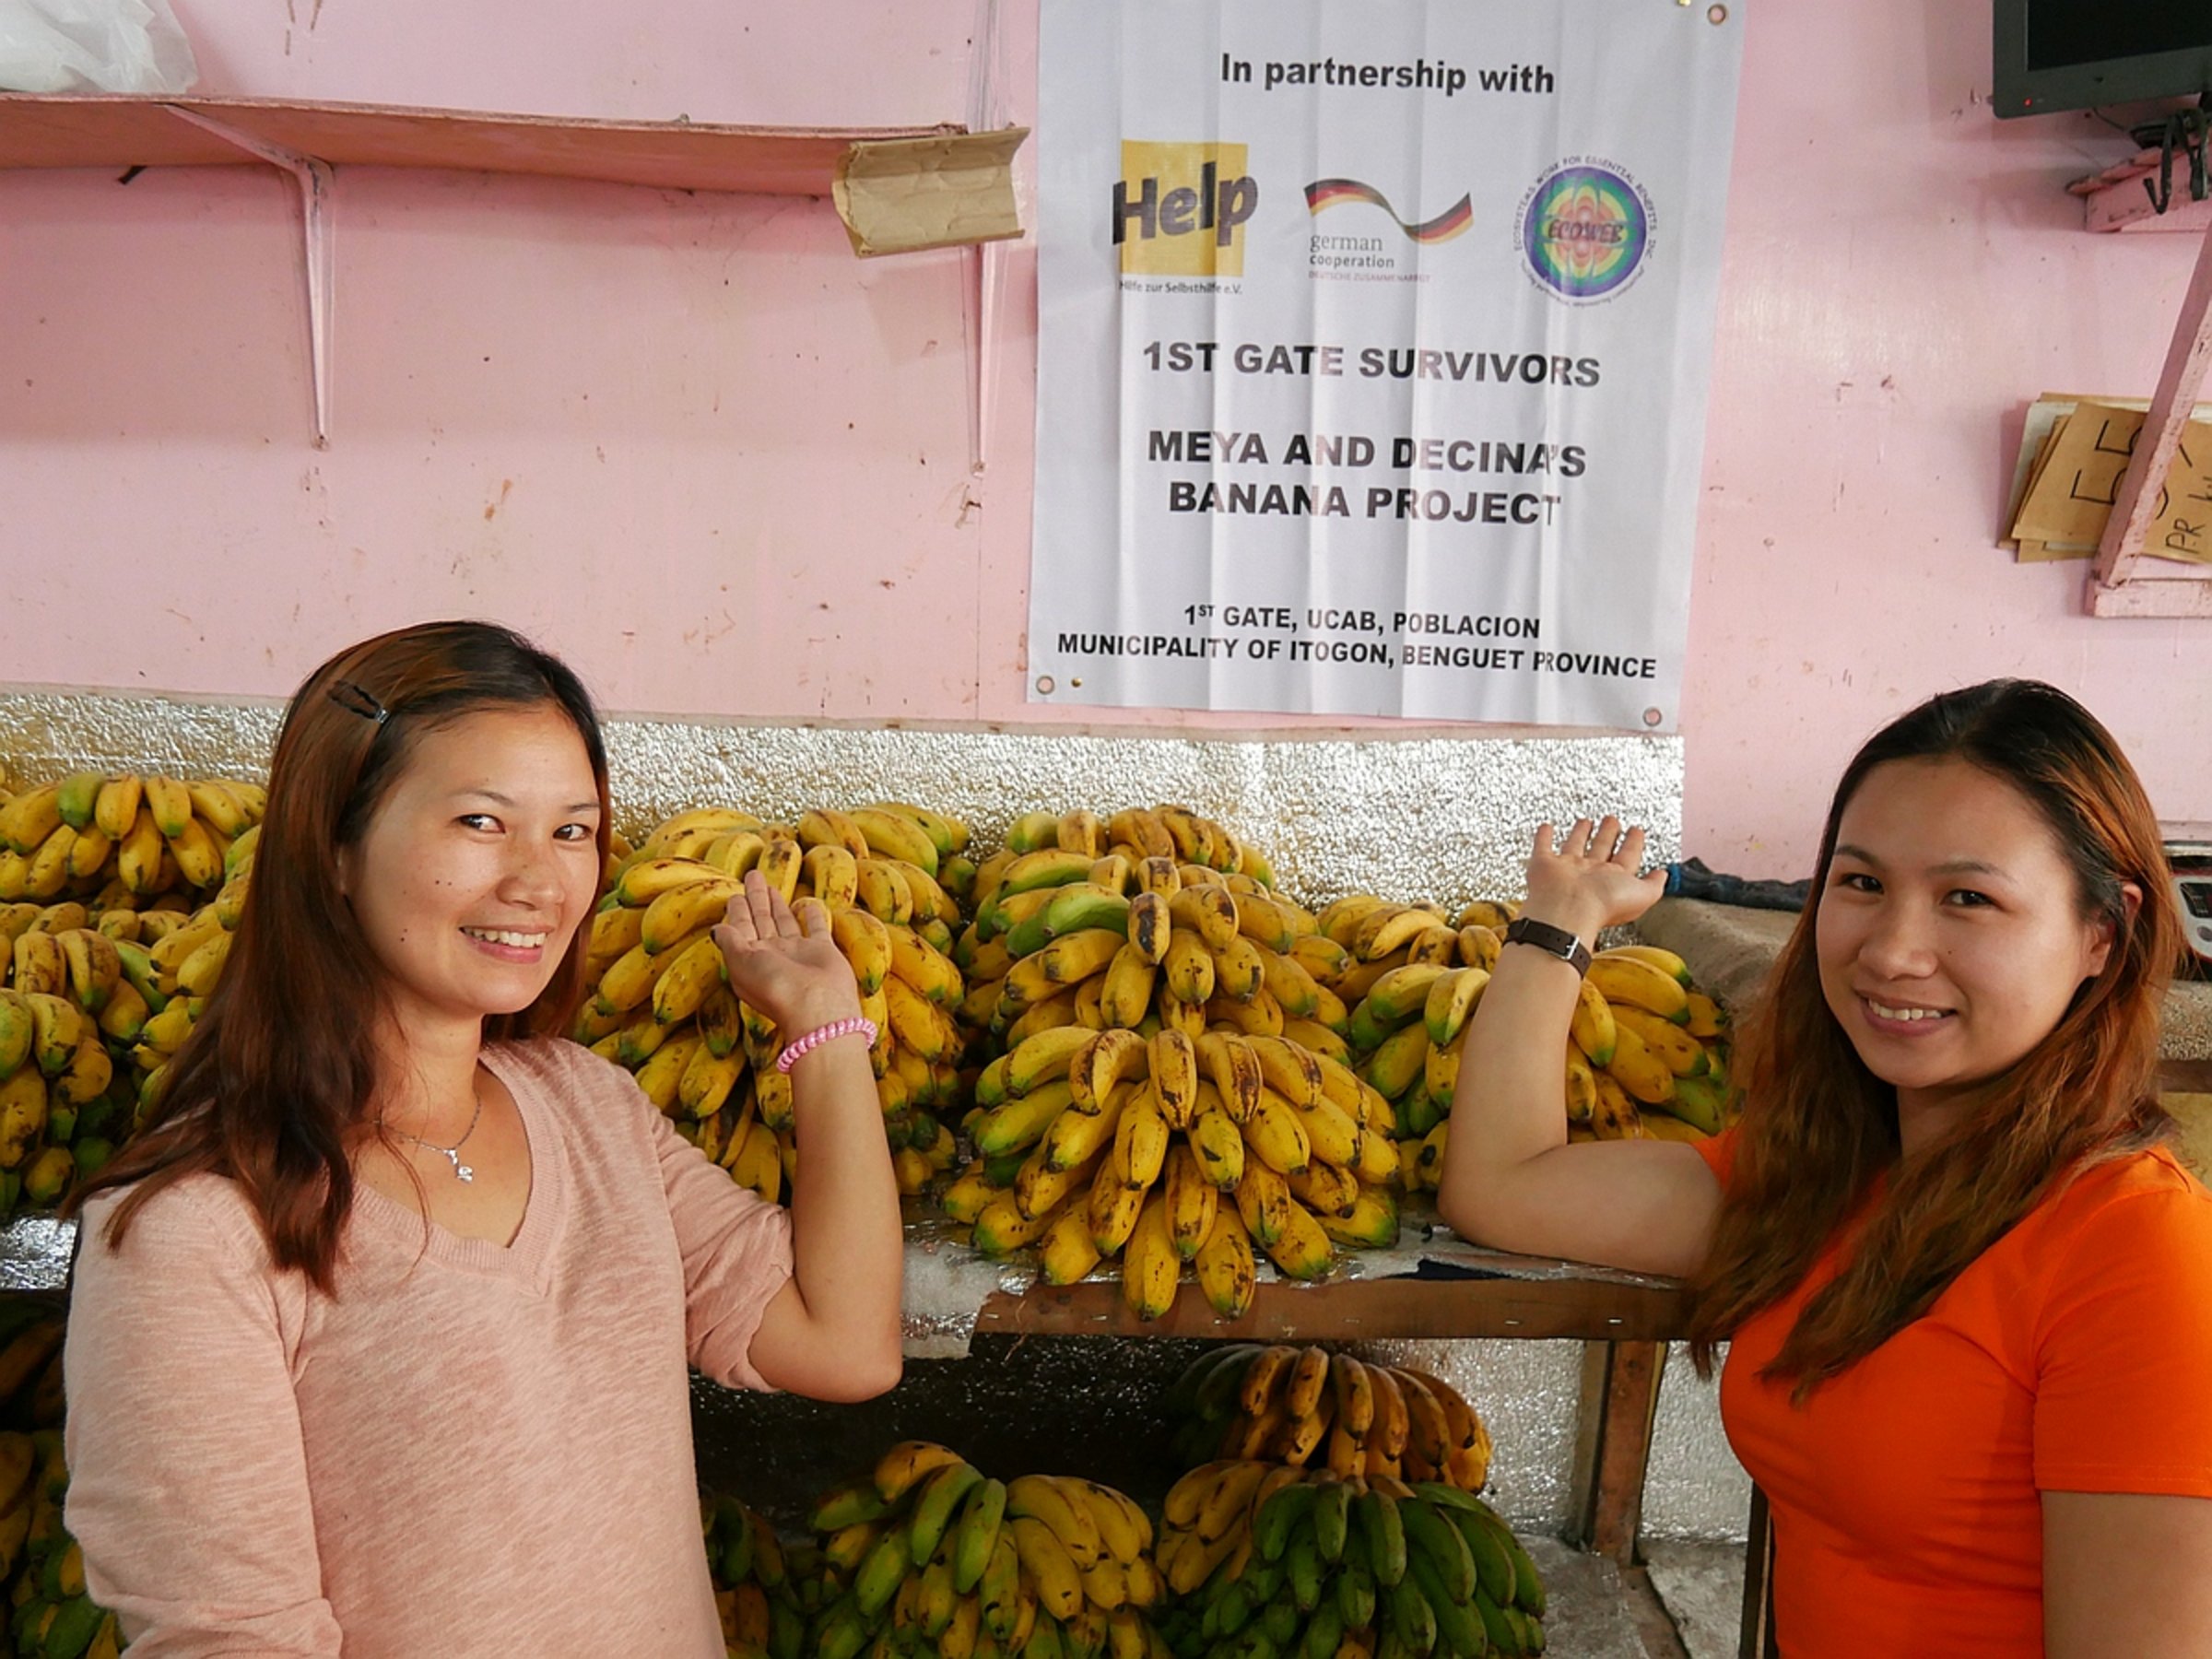 Zwei philippinische Frauen, die von Help unterstützt wurden